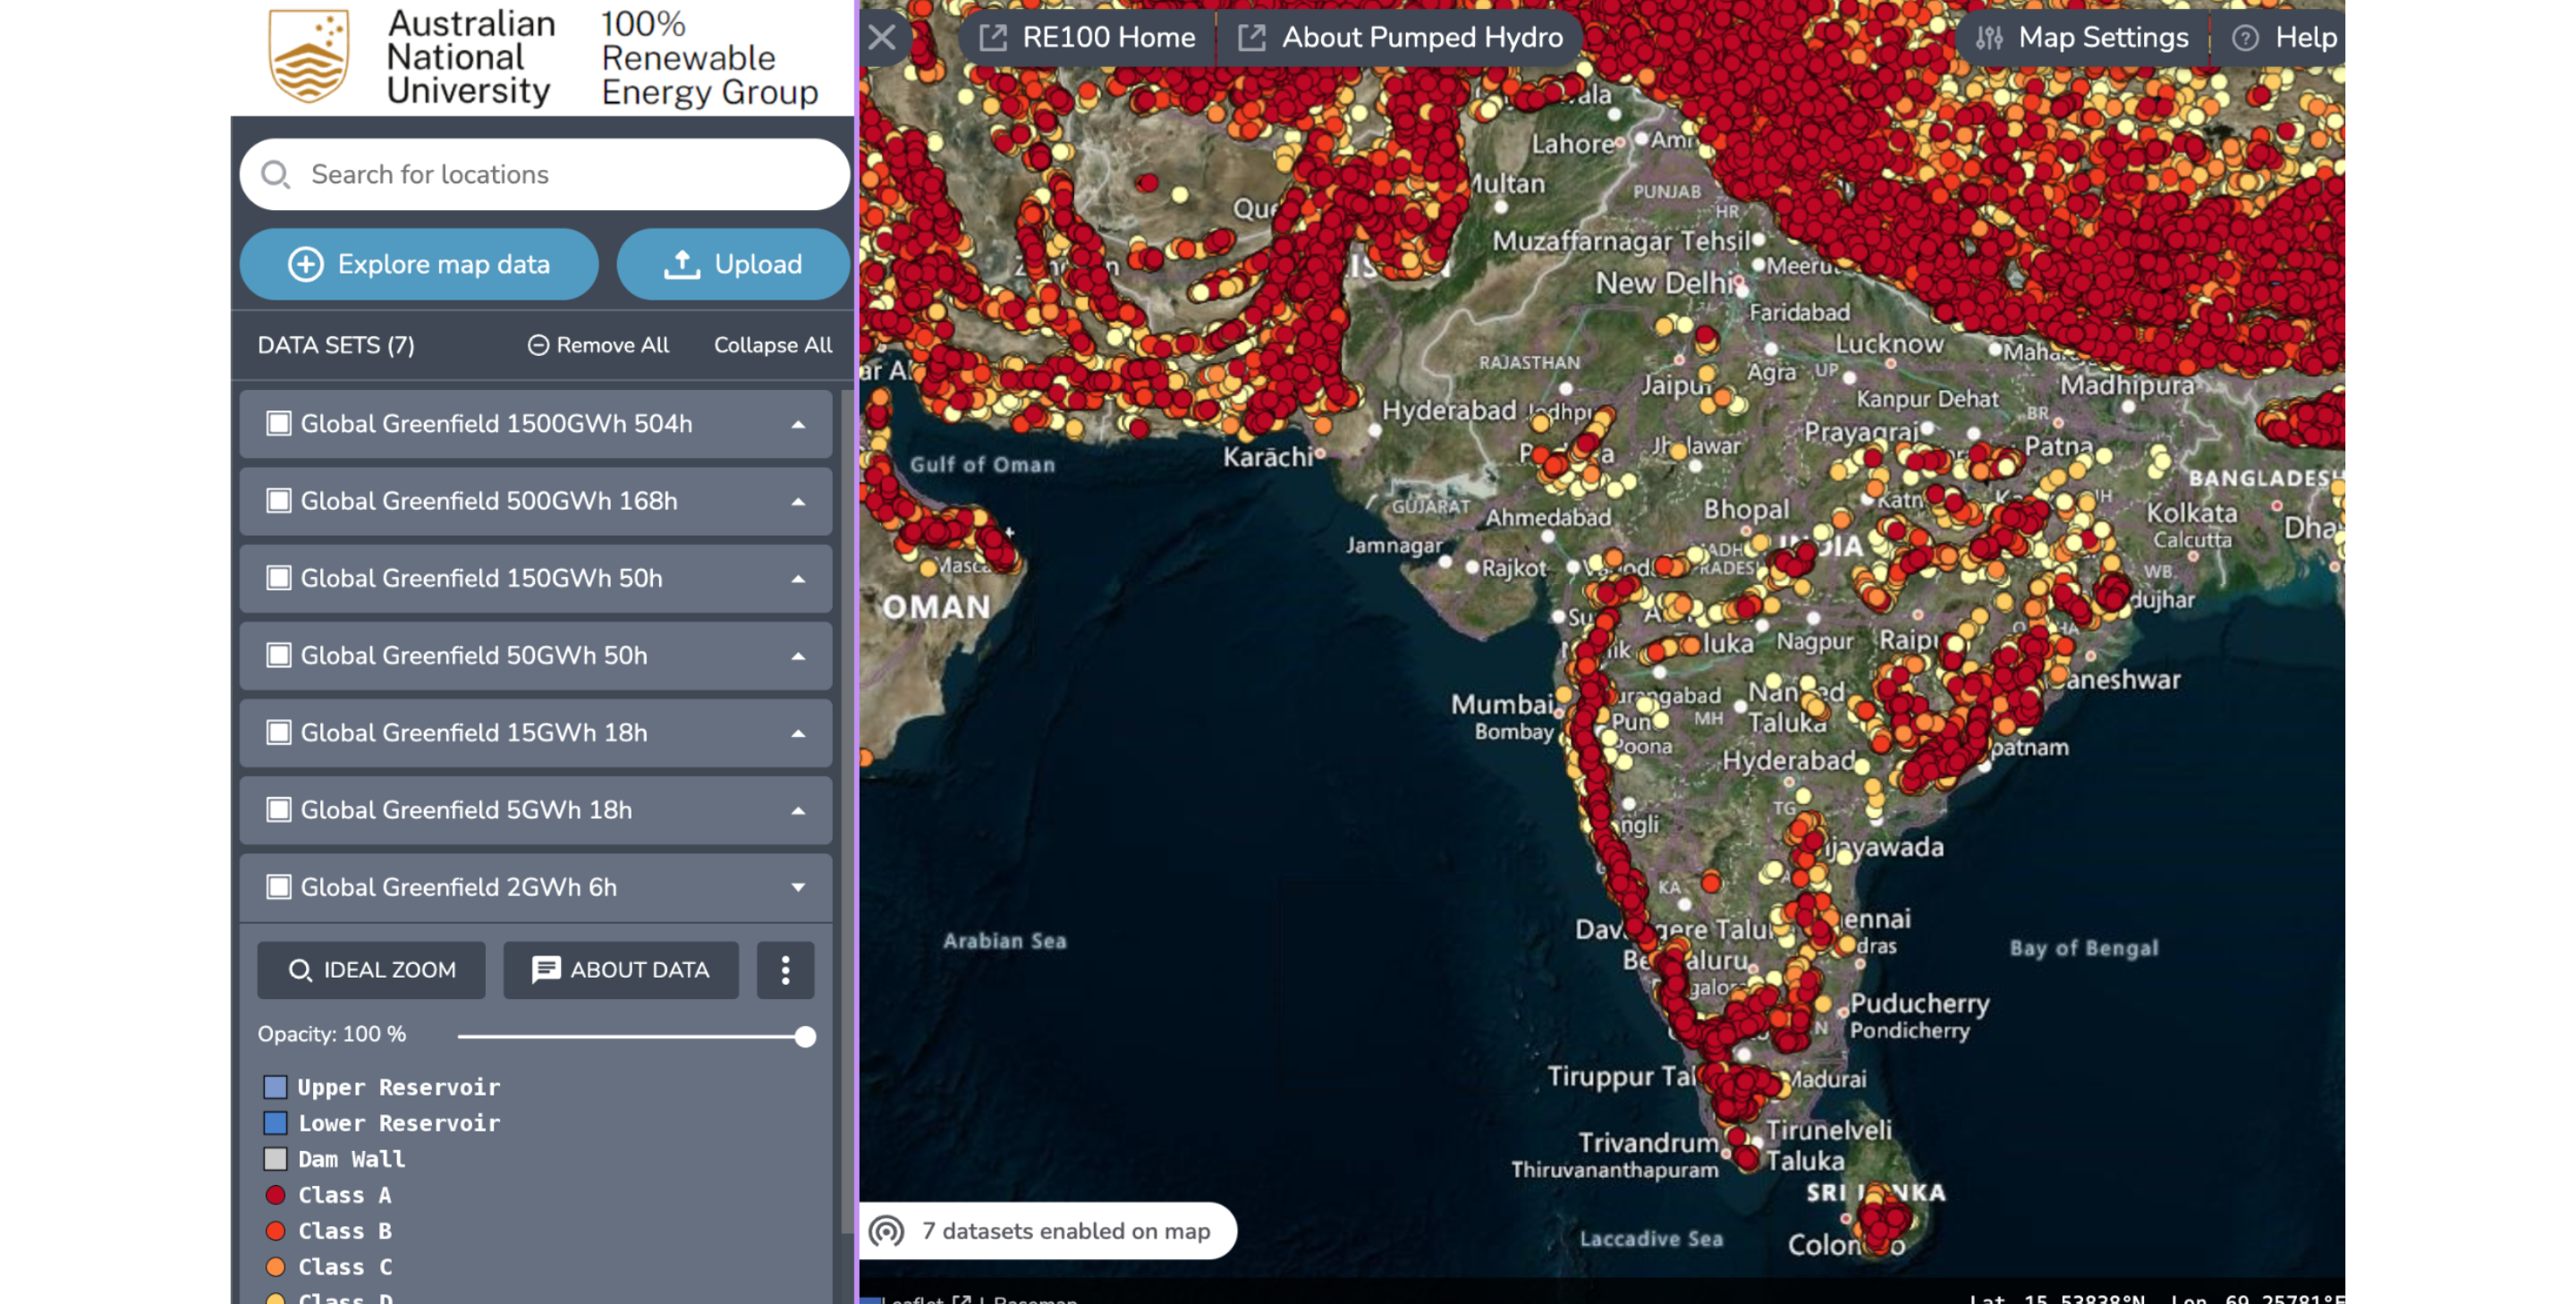 Capacidad de recursos hídricos bombeados y de circuito cerrado en la India según el atlas greenfield global SIG de la Universidad Nacional de Australia